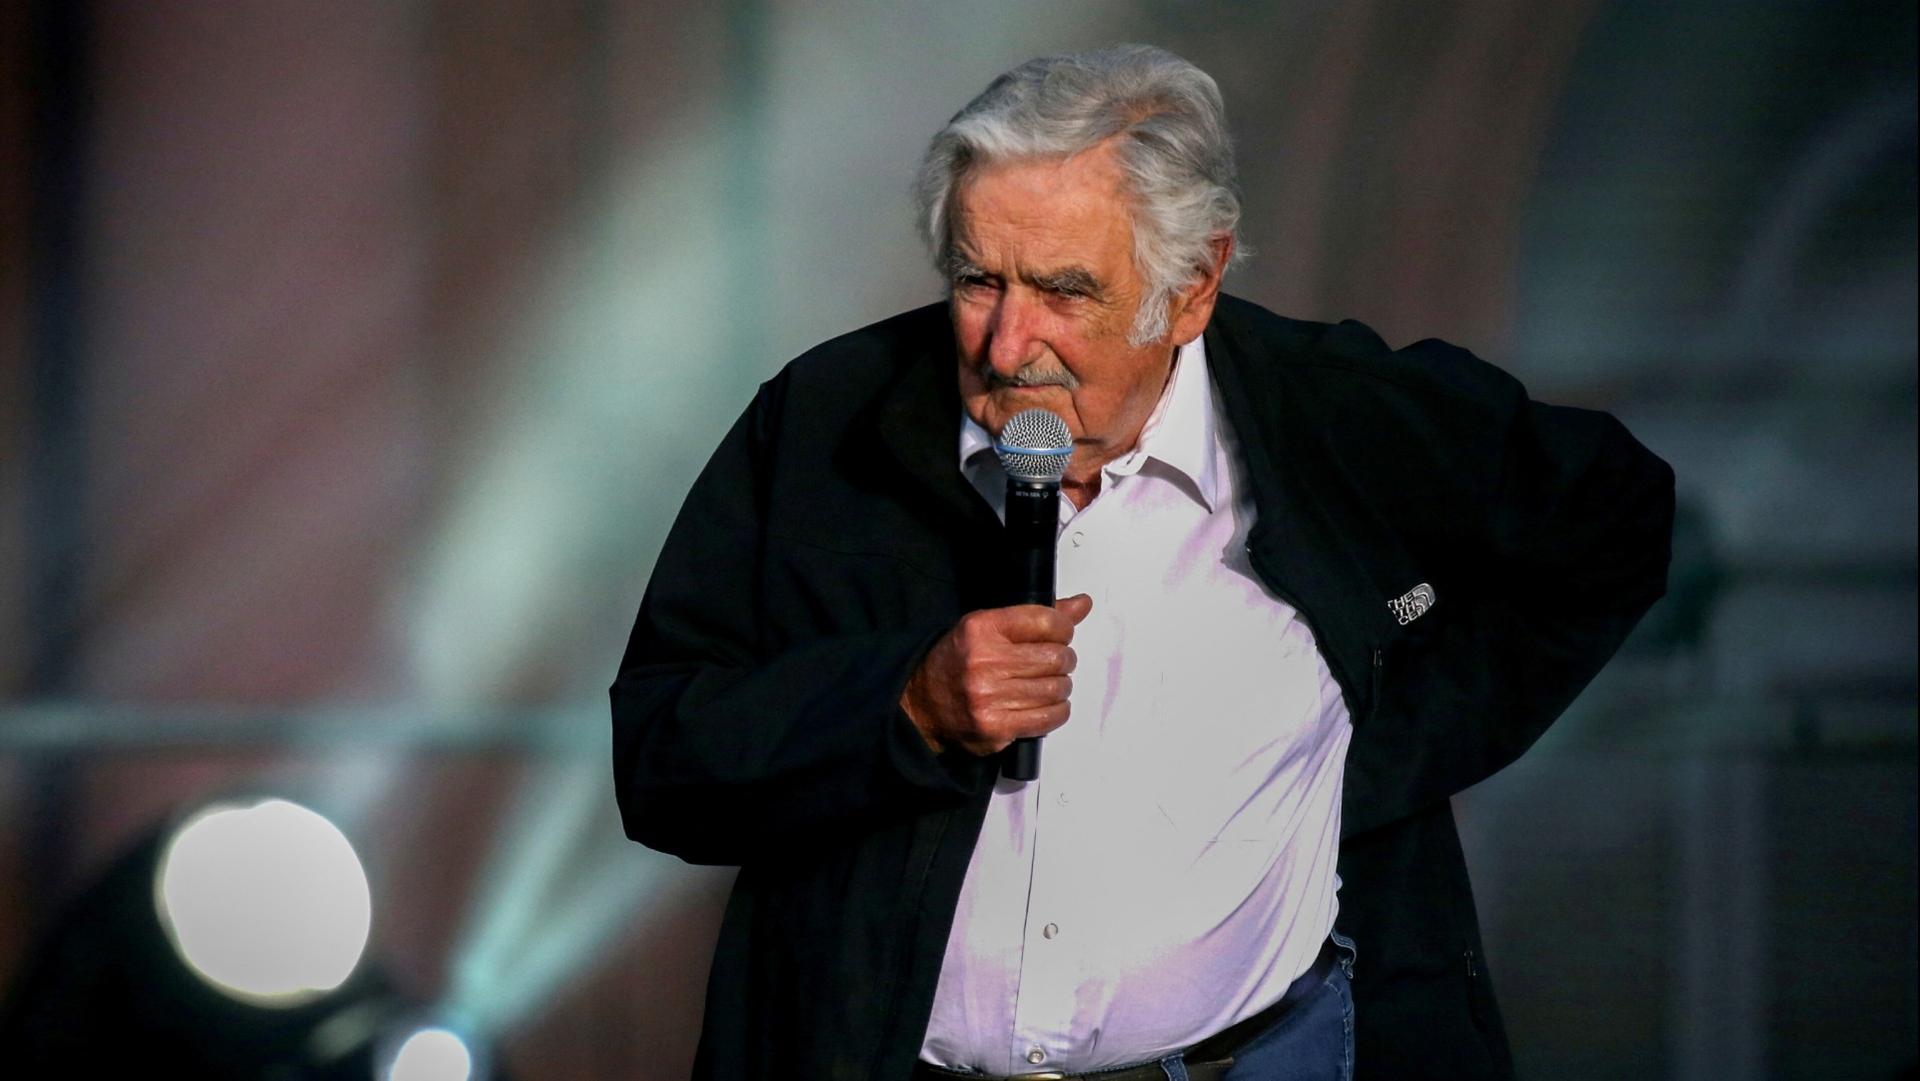 AMLO Envía ‘Un Gran Abrazo’ a Pepe Mujica por Tumor en Esófago que Padece: 'Va a Salir Bien'